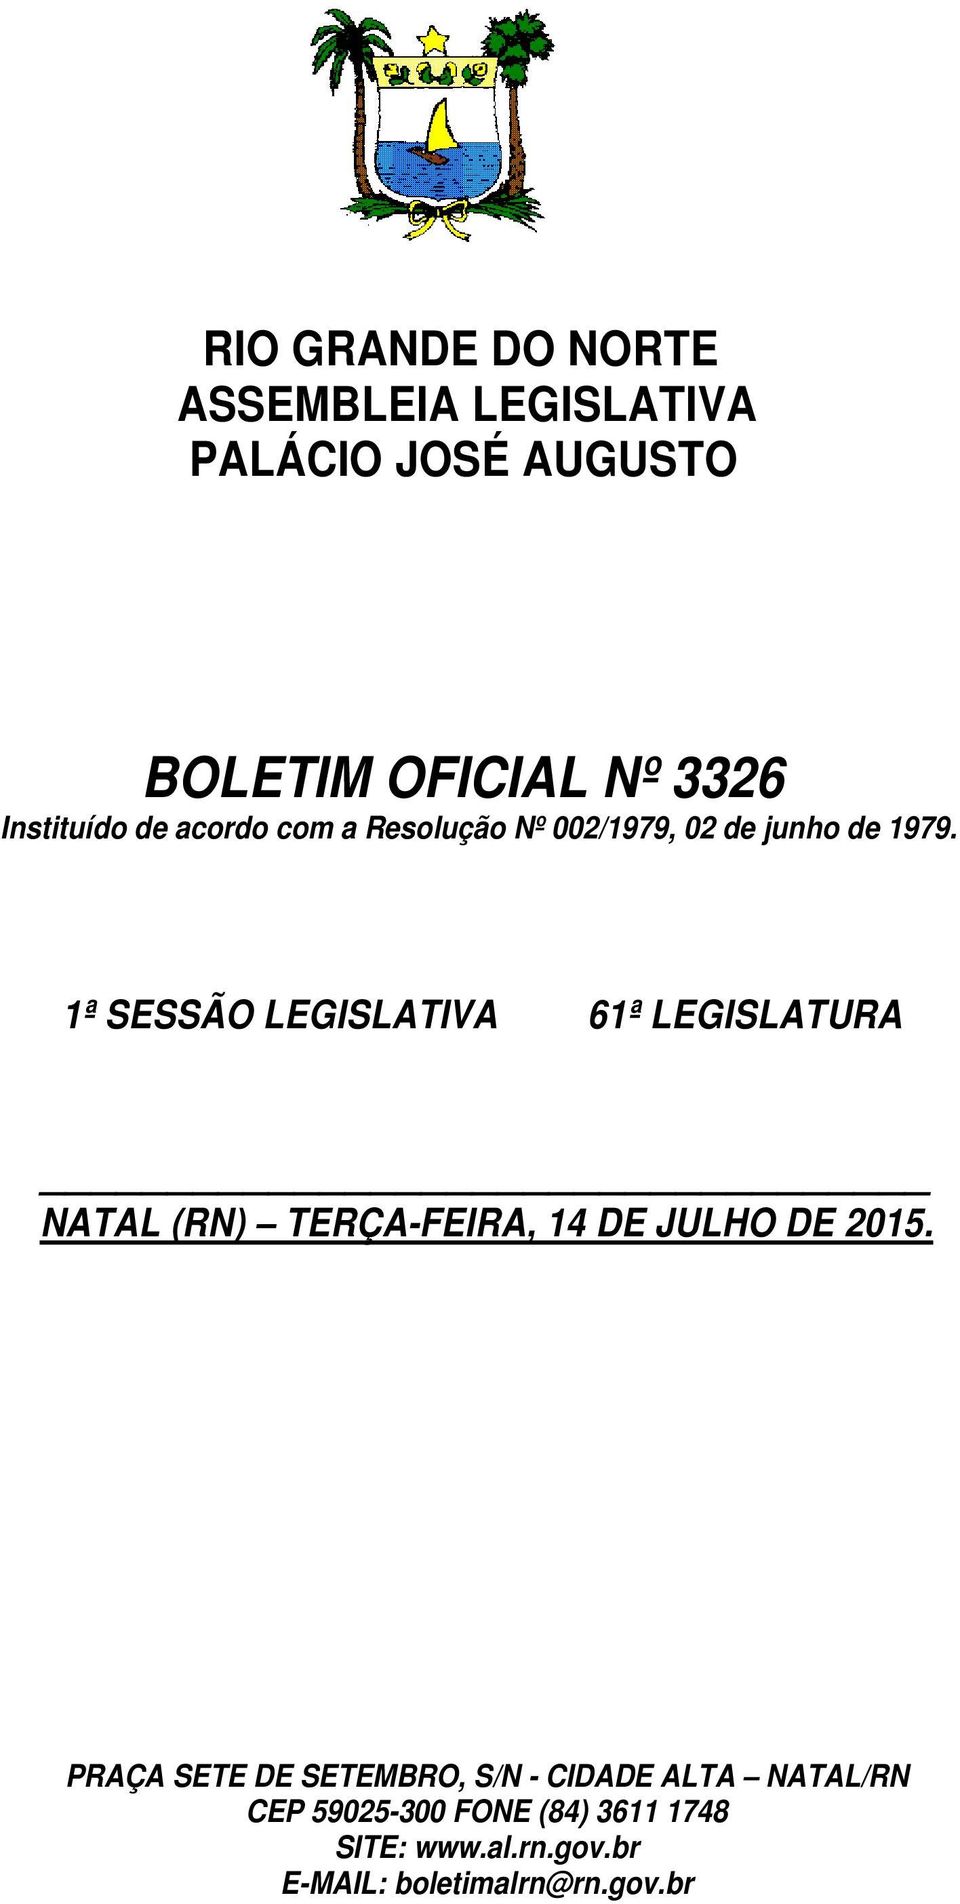 1ª SESSÃO LEGISLATIVA 61ª LEGISLATURA NATAL (RN) TERÇA-FEIRA, 14 DE JULHO DE 2015.